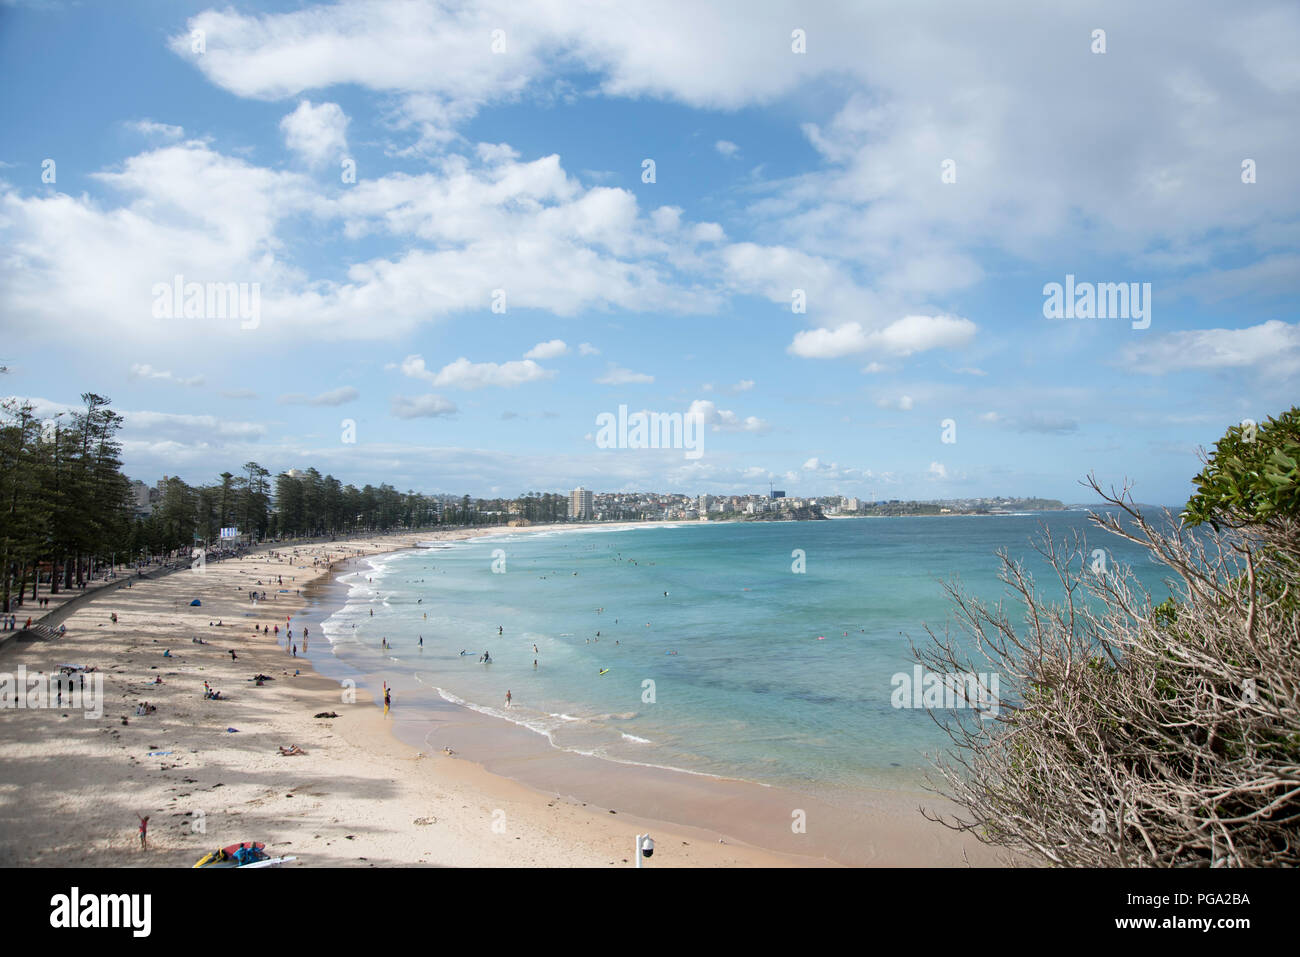 Vista della spiaggia di Manly dall'estremità meridionale, guardando verso Queenscliff, Nuovo Galles del Sud, Australia Foto Stock